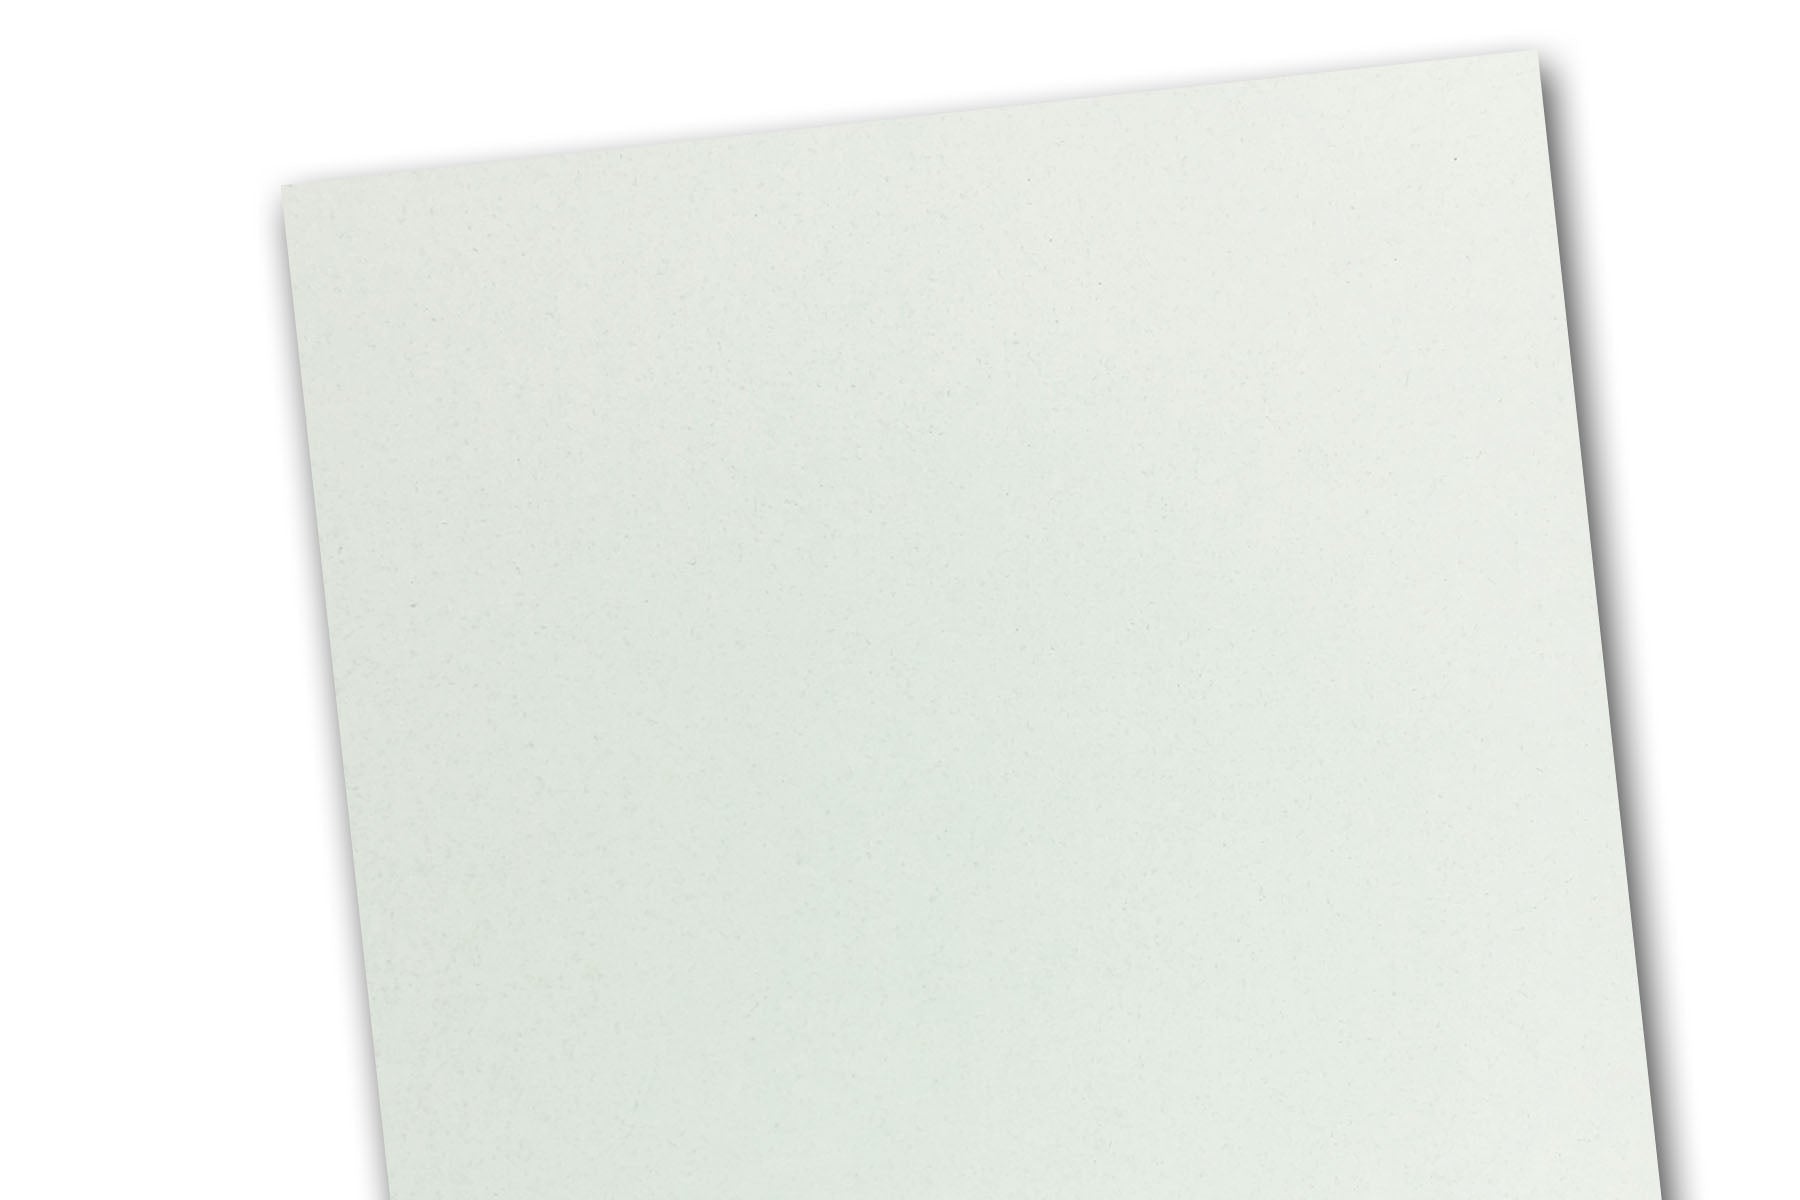 Royal Sundance Fiber - 8.5 x 11 Cardstock Paper - WHITE - 80lb Cover - 250